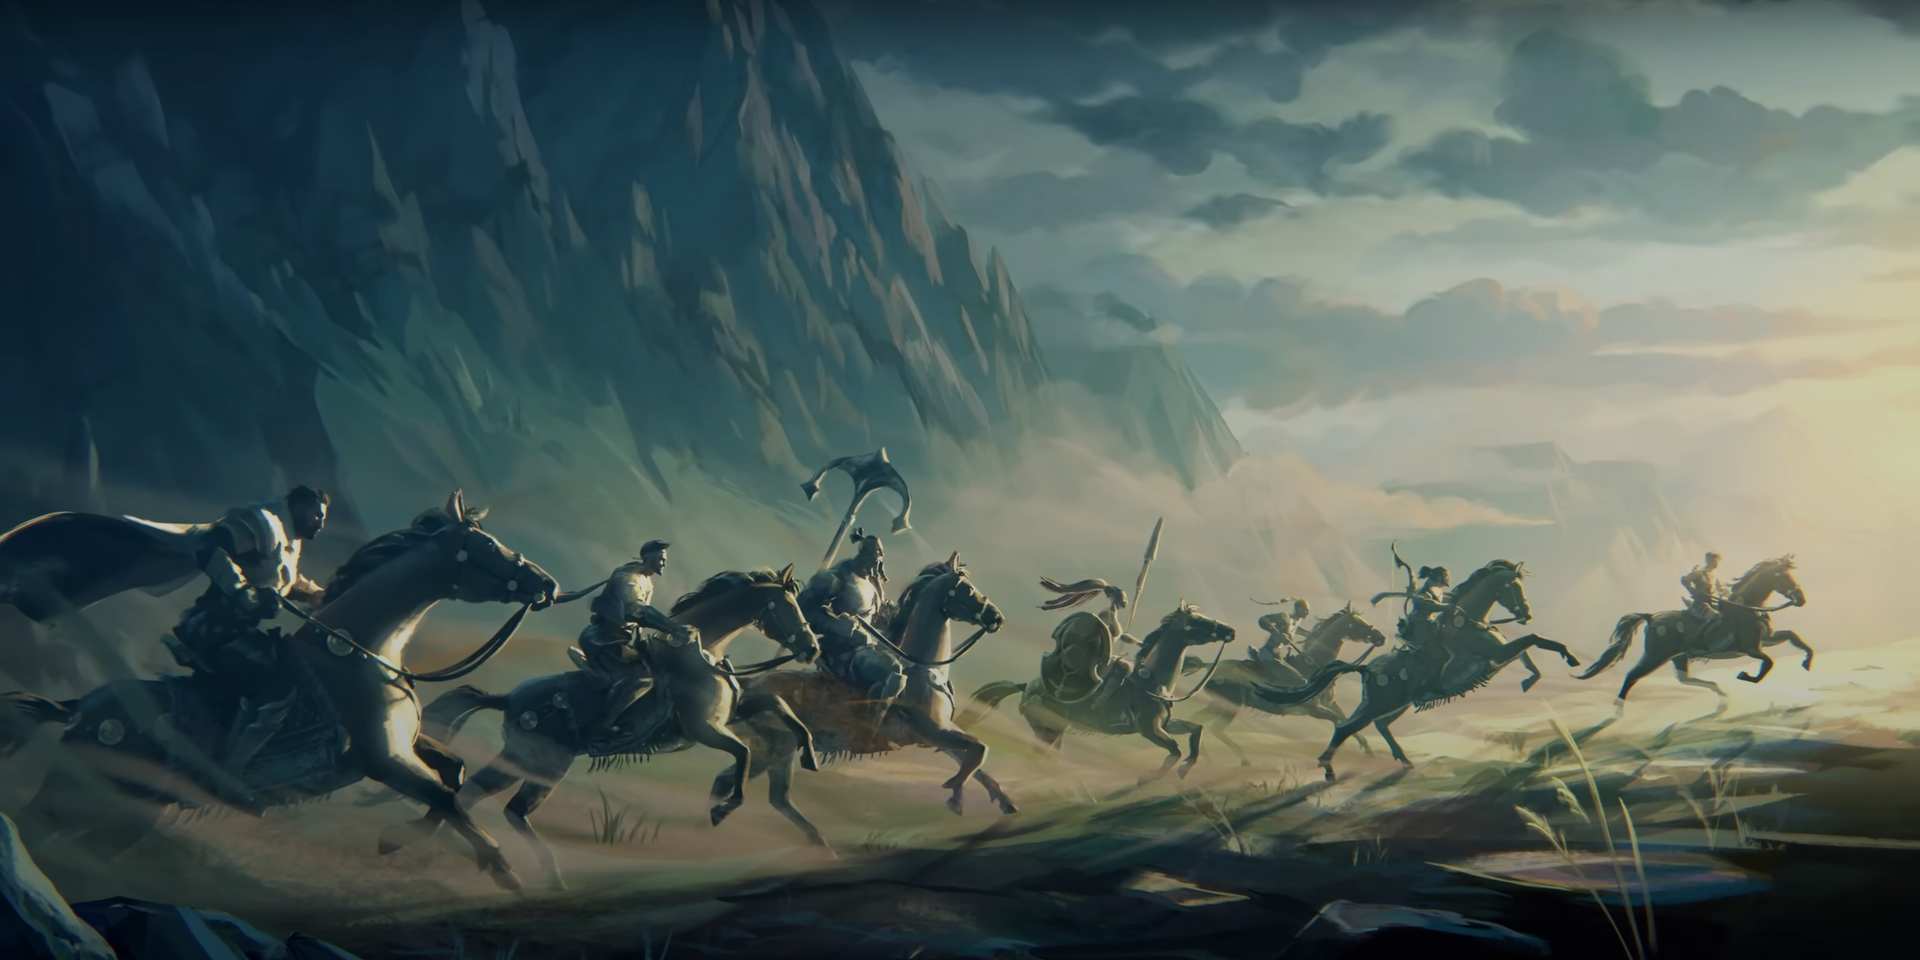 游戏中的“不死军团”参考了真实历史的波斯长生军